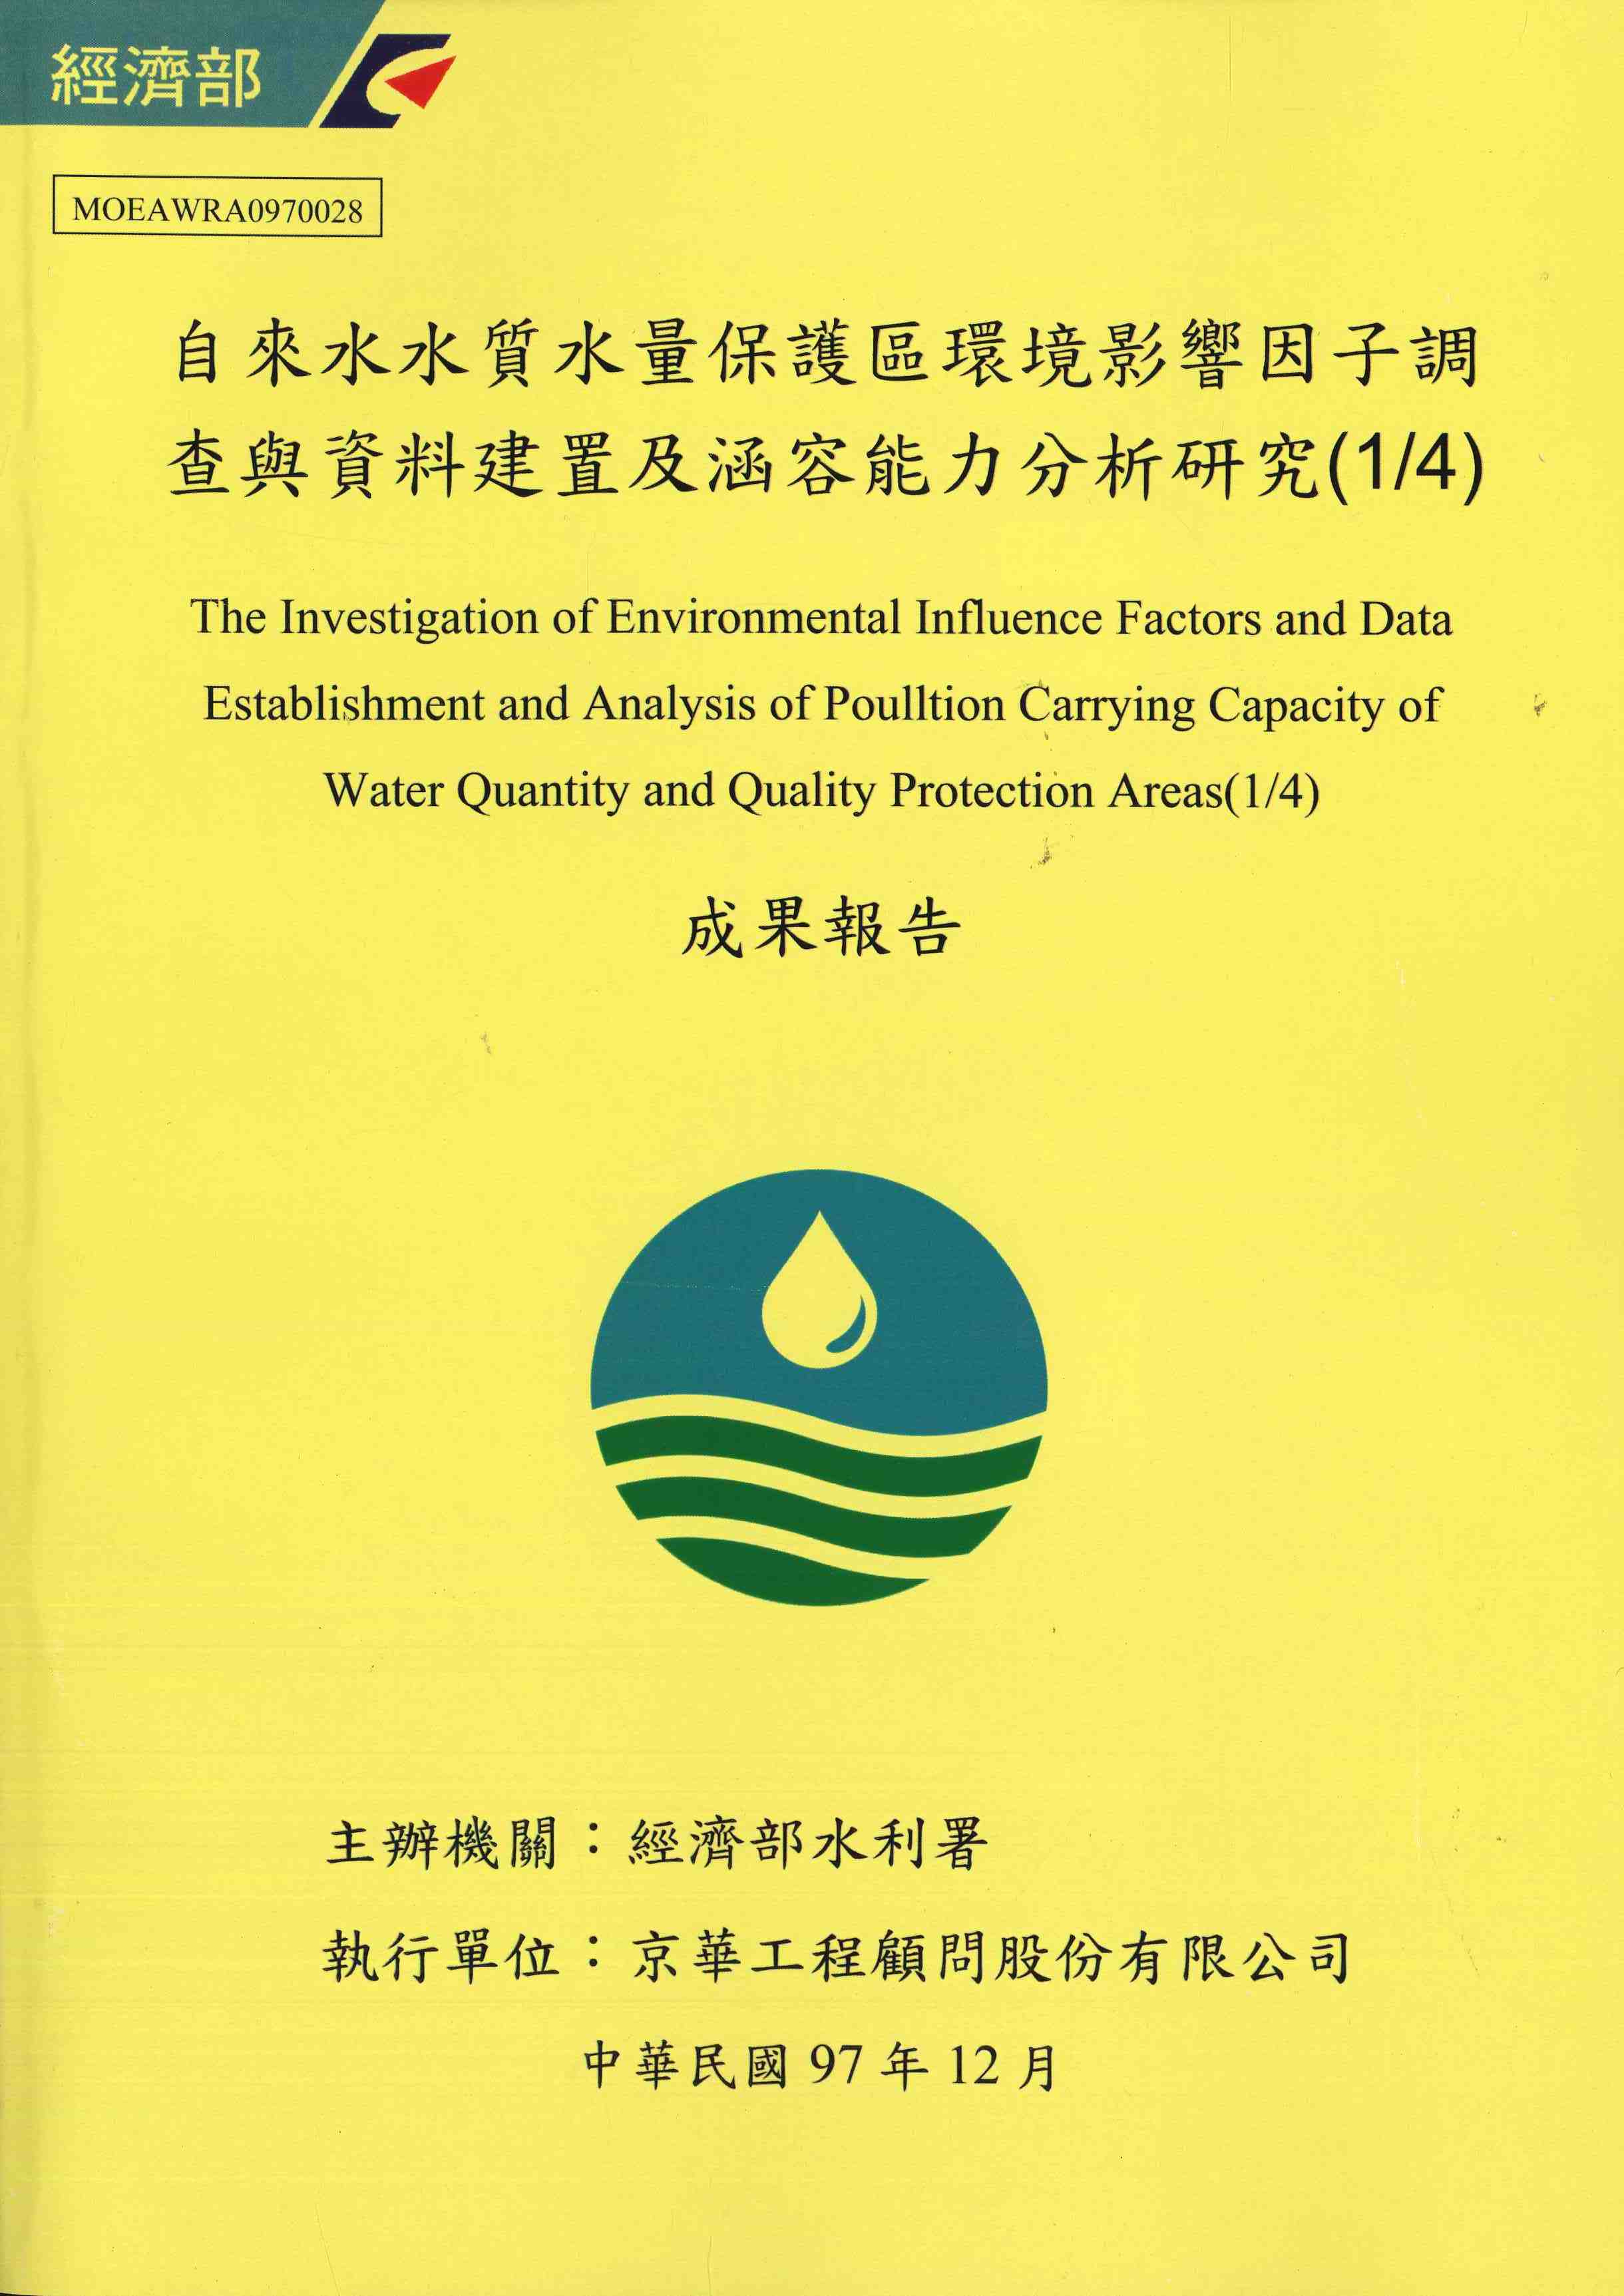 自來水水質水量保護區環境影響因子調查與資料建置及涵容能力分析研究(1/4)